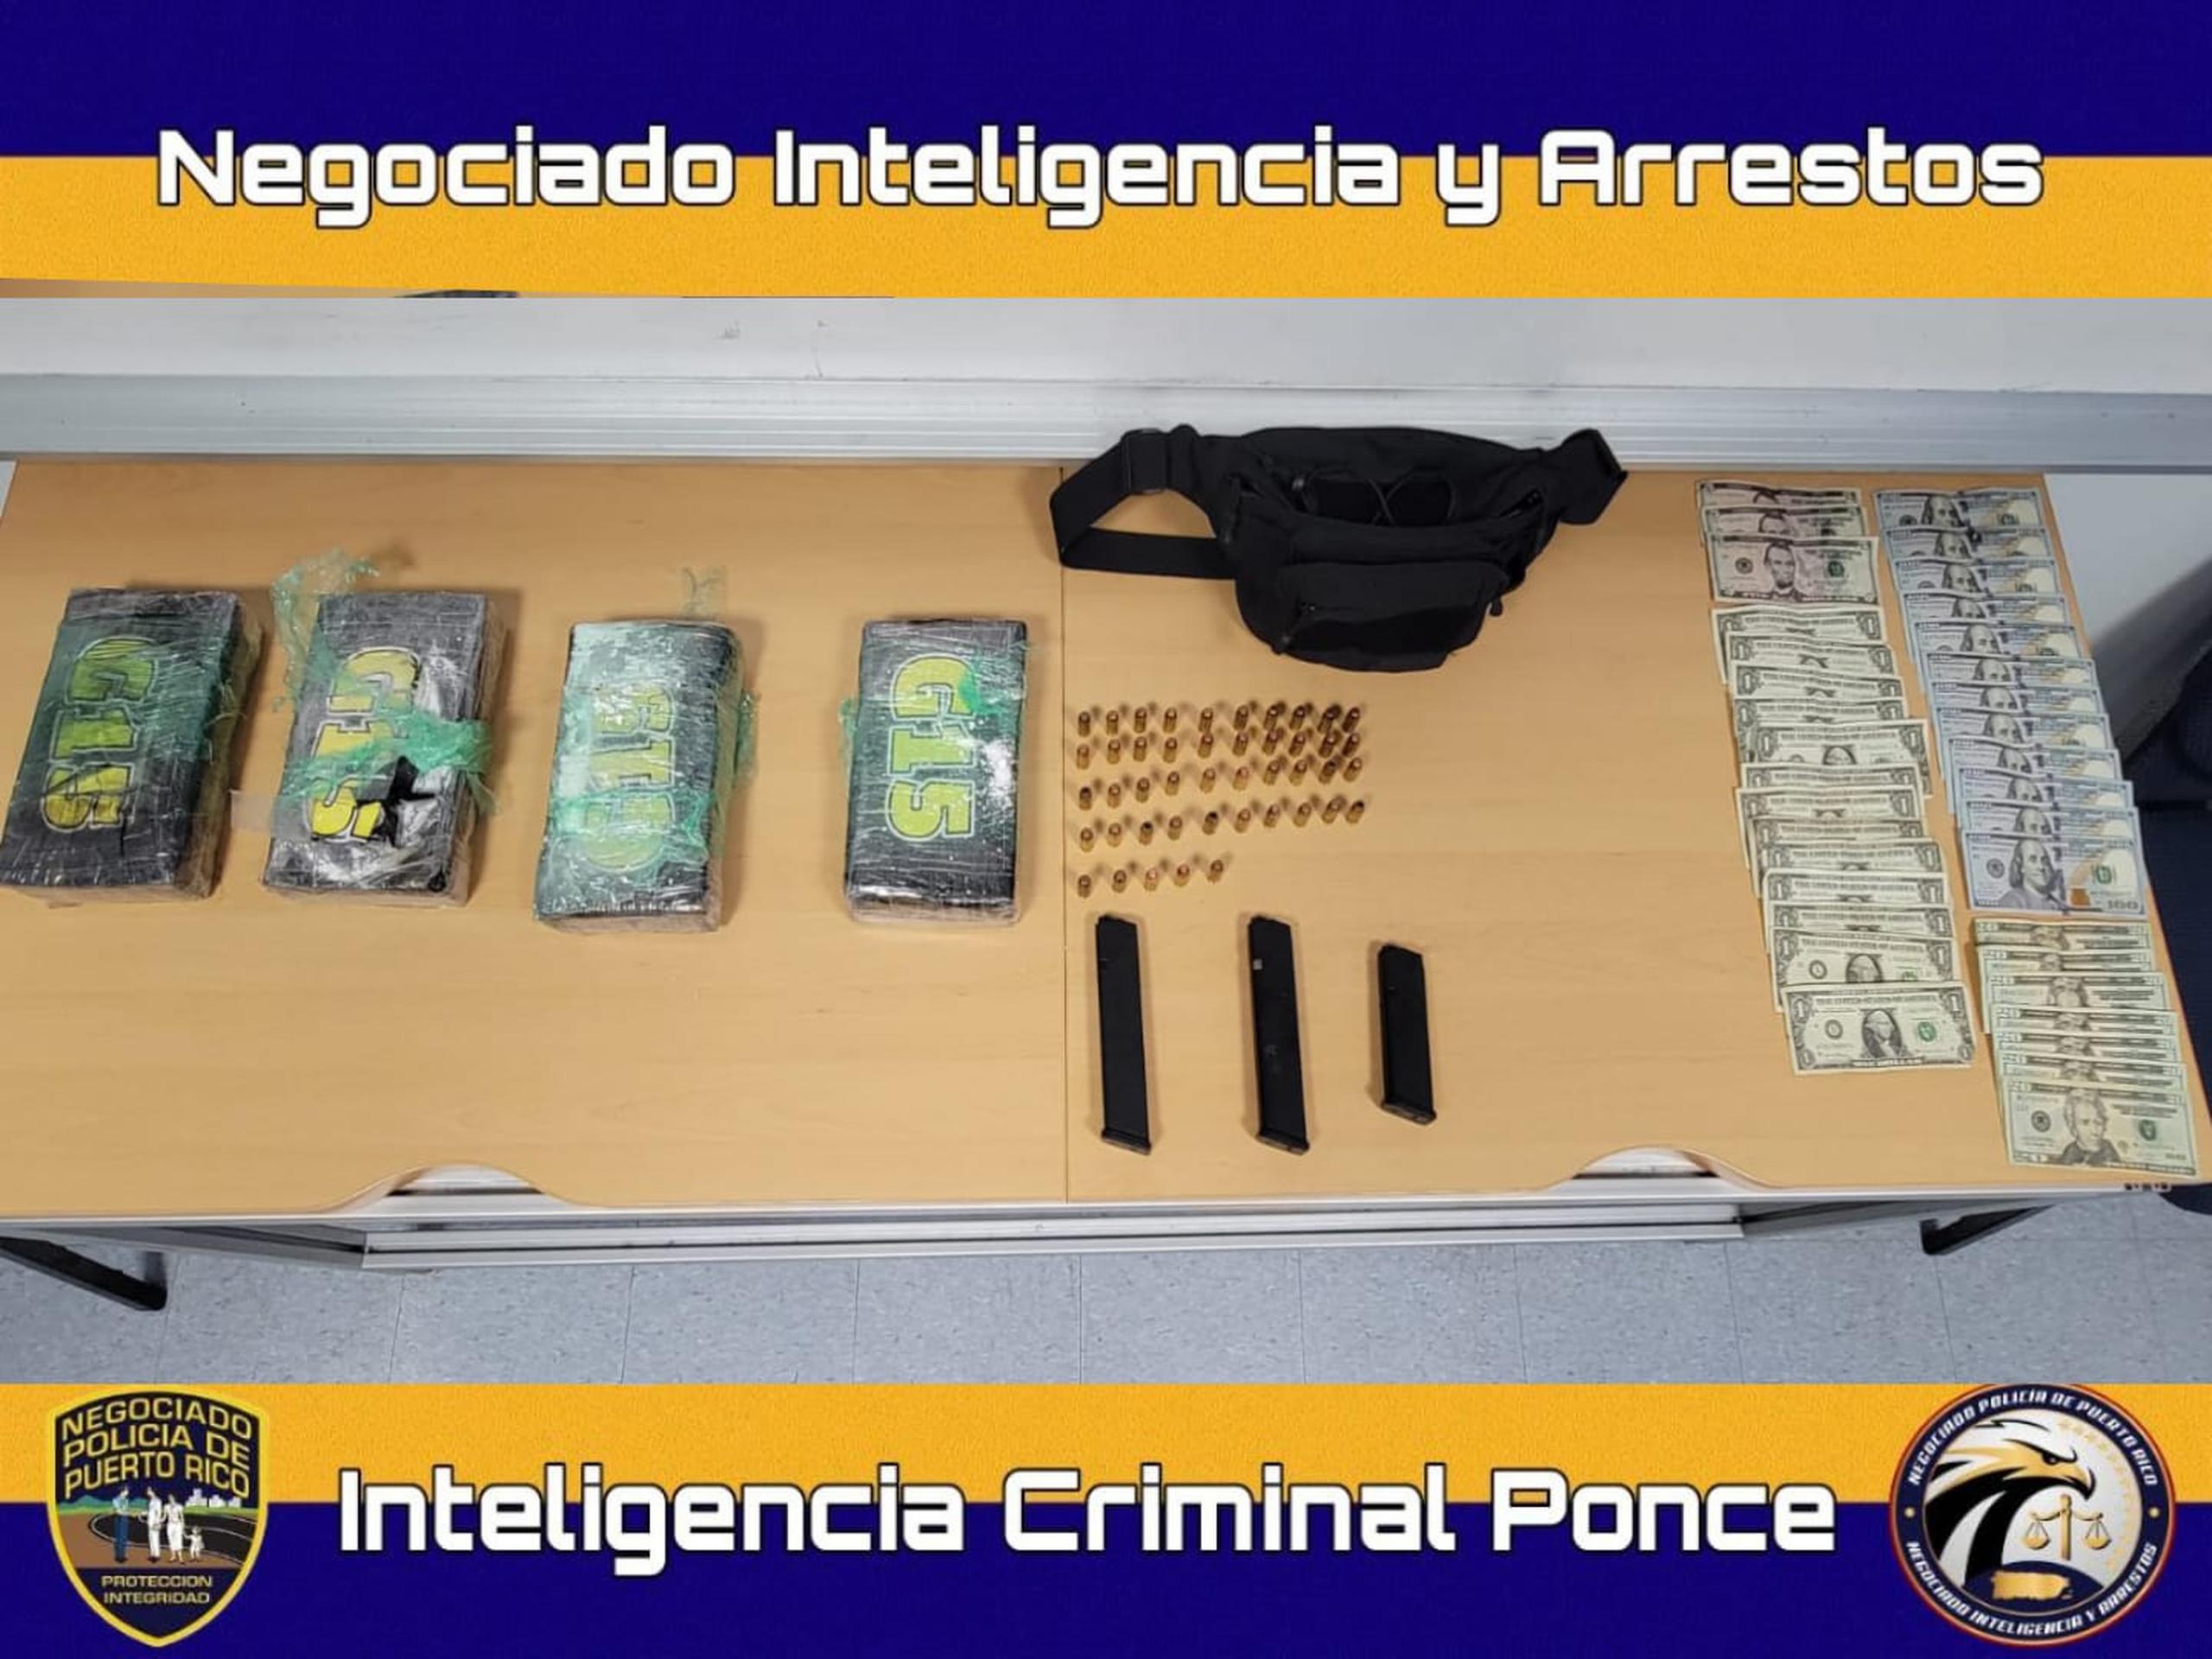 La DEA tomó jurisdicción de la pesquisa tras la División de Inteligencia de Ponce, ocupar cuatro kilos de cocaína, cargadores y balas a un conductor en Juana Díaz.